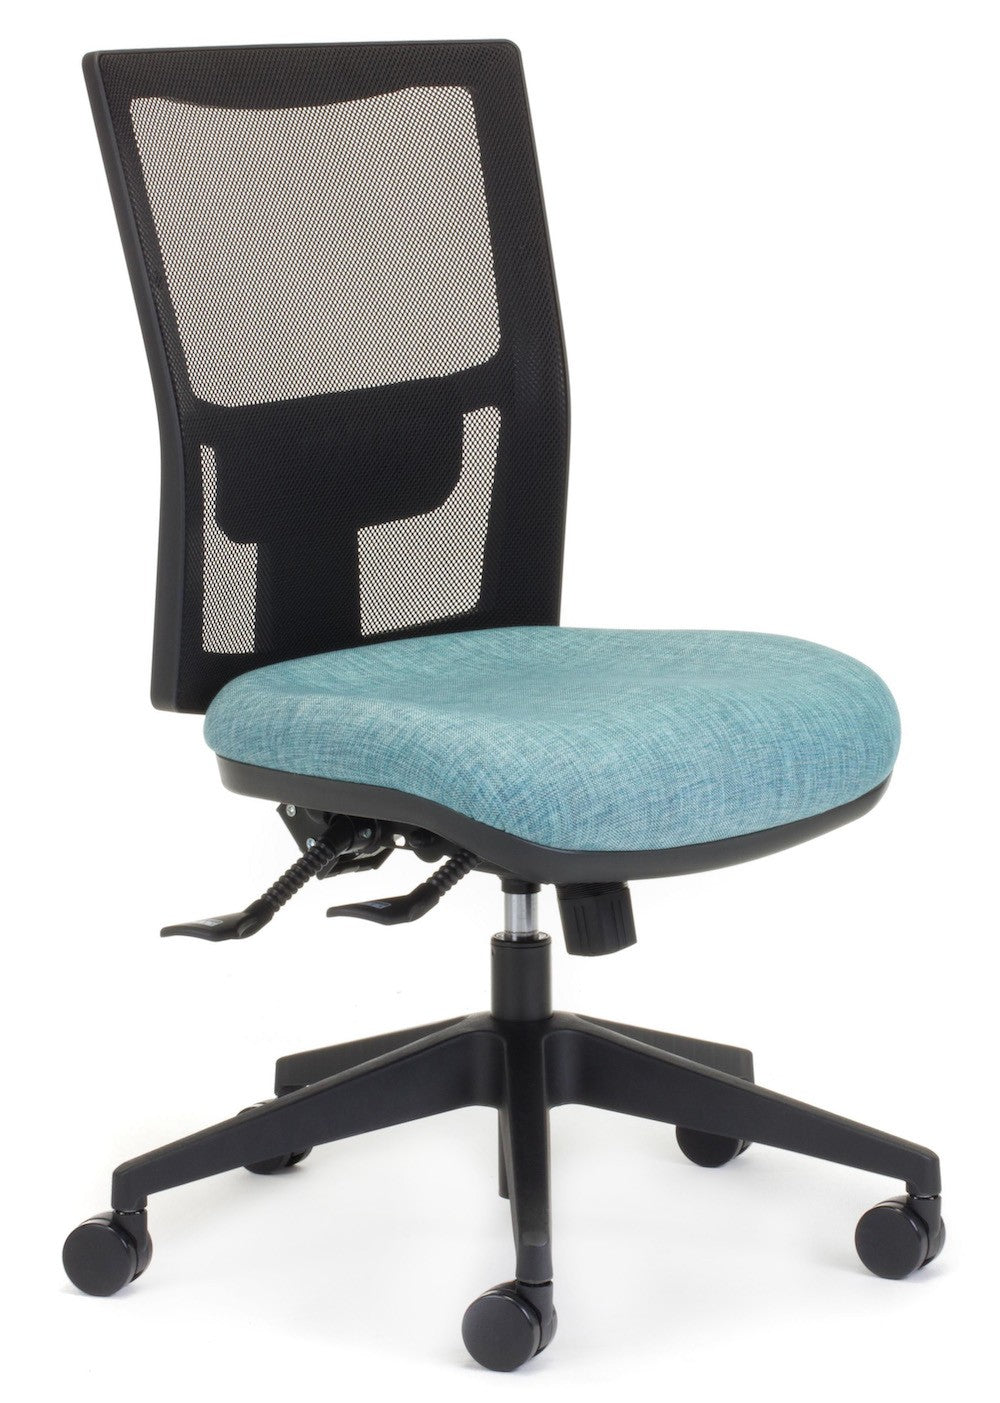 Team Air Chair